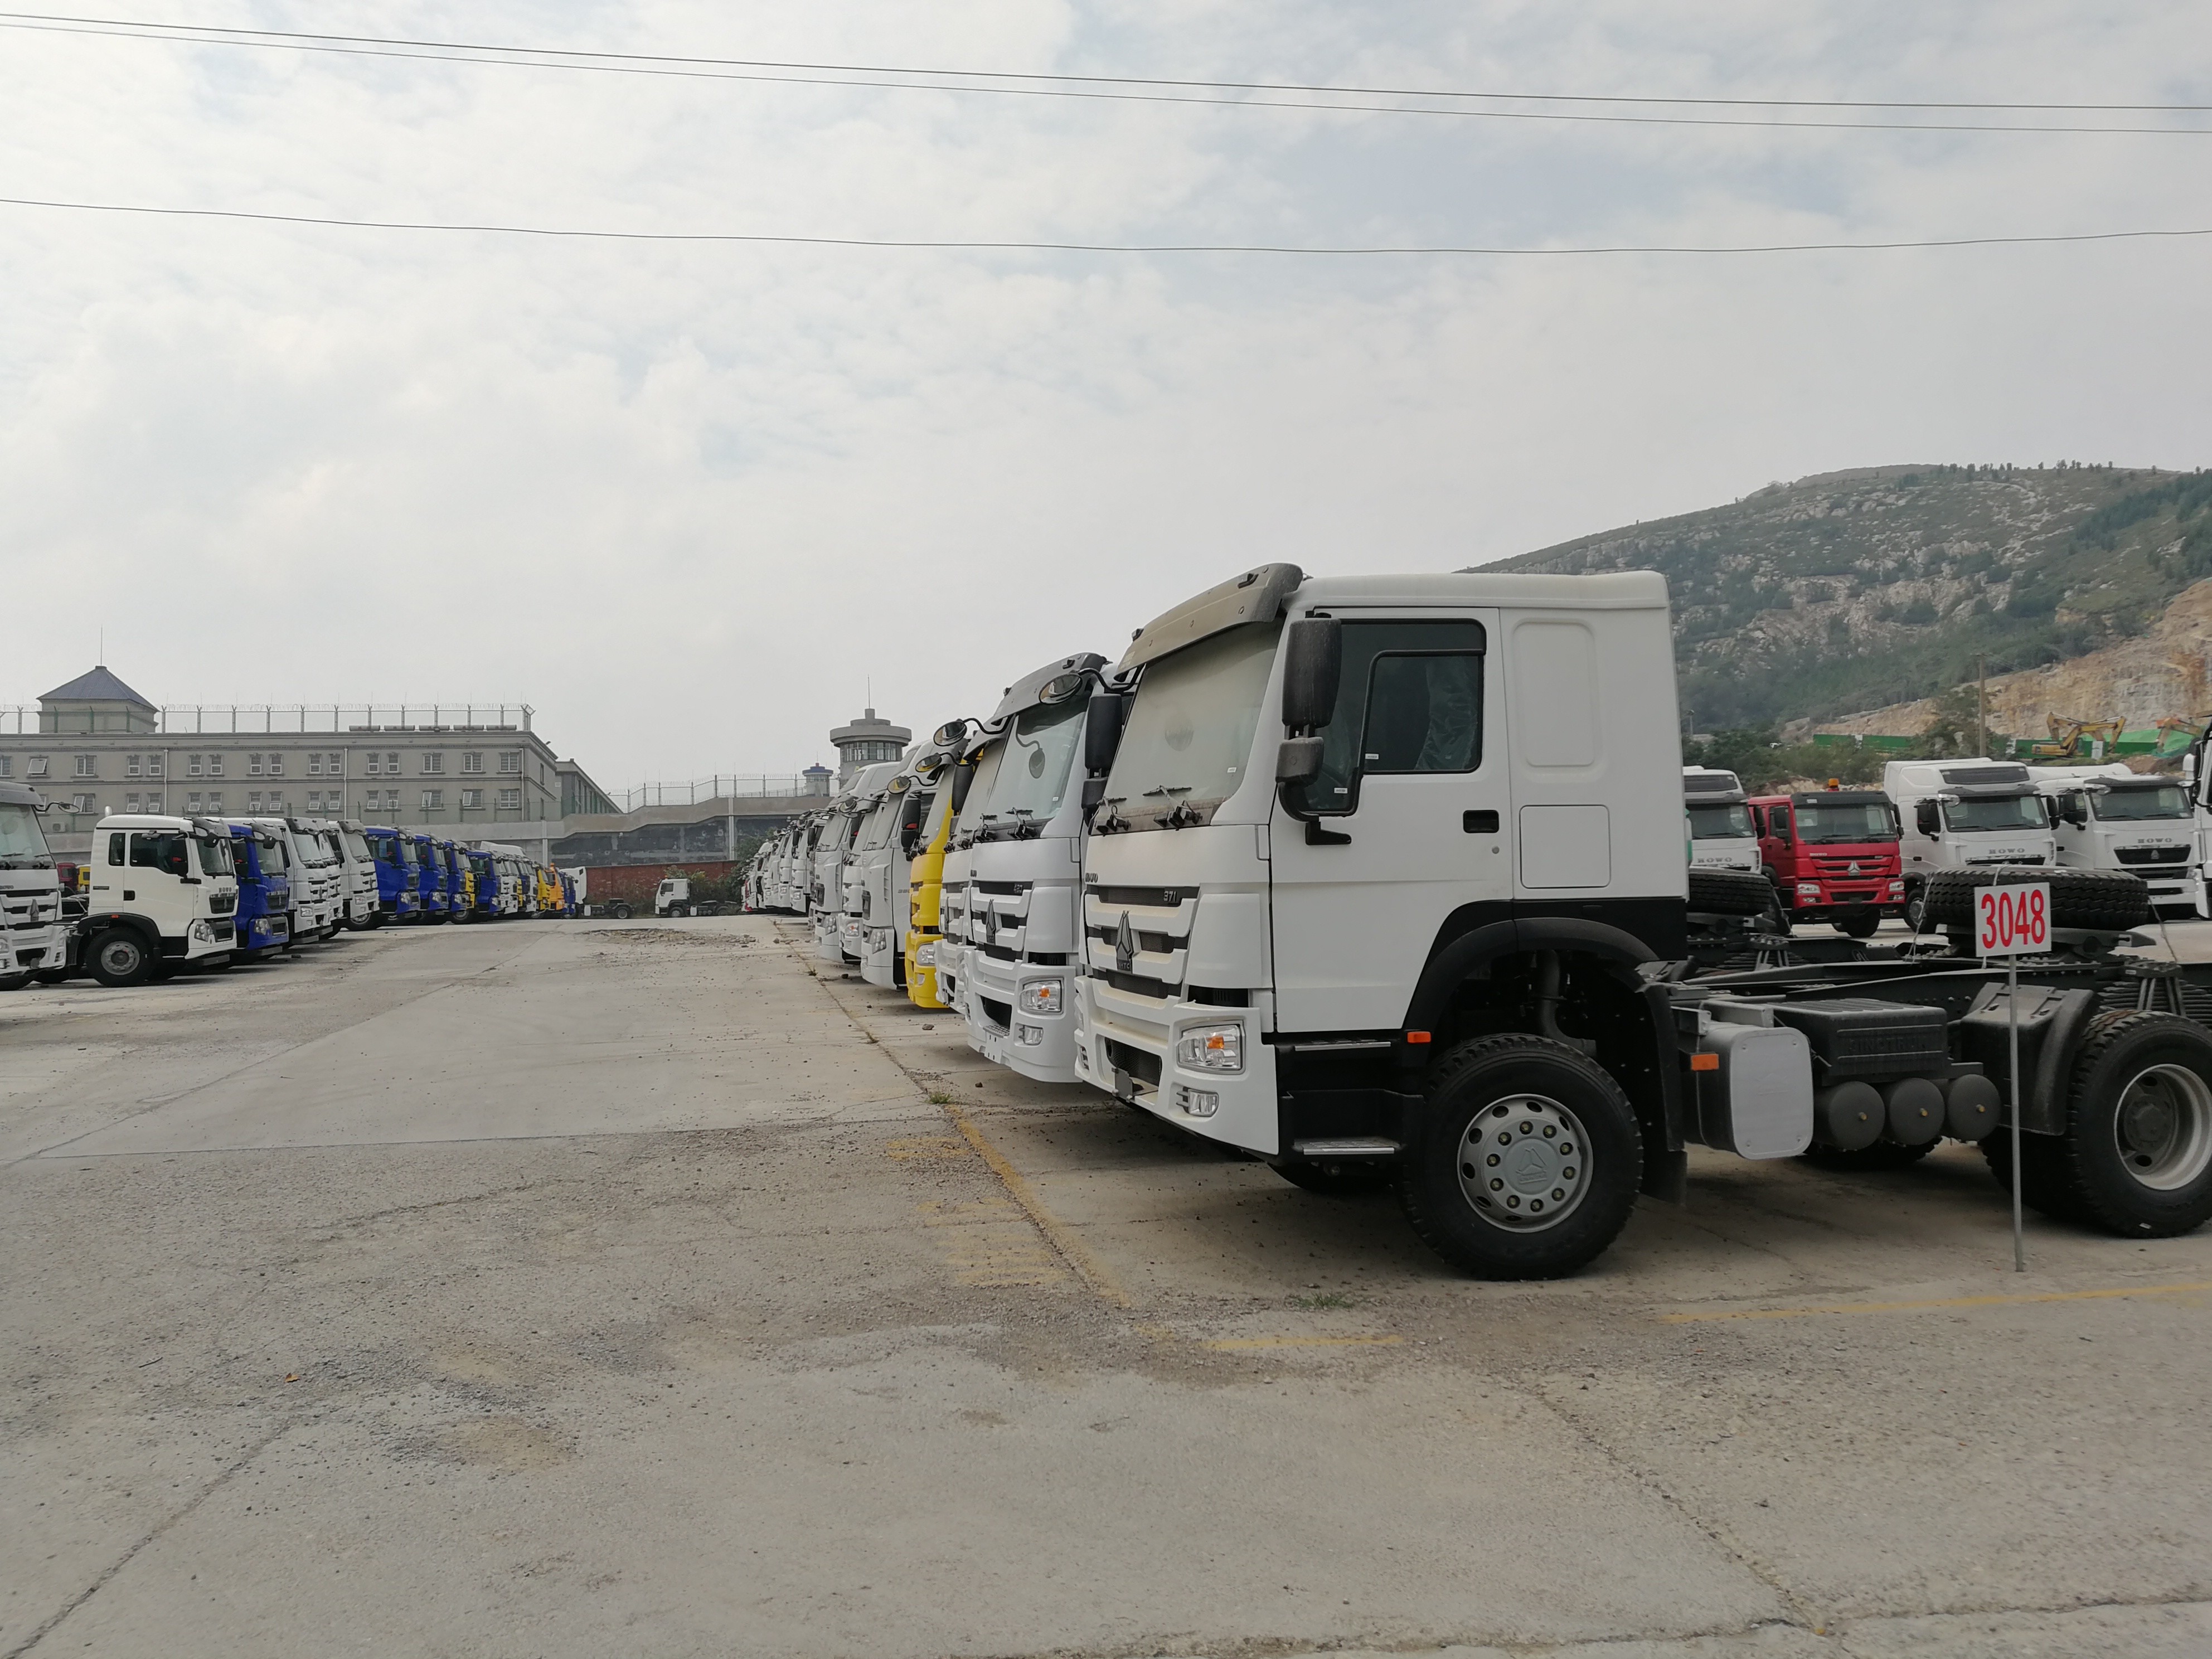 Sinotruk Howo 6x4 420 PK-de Vrachtwagen van de Tractoraanhangwagen met D12.40-Motor en HW76-Cabine